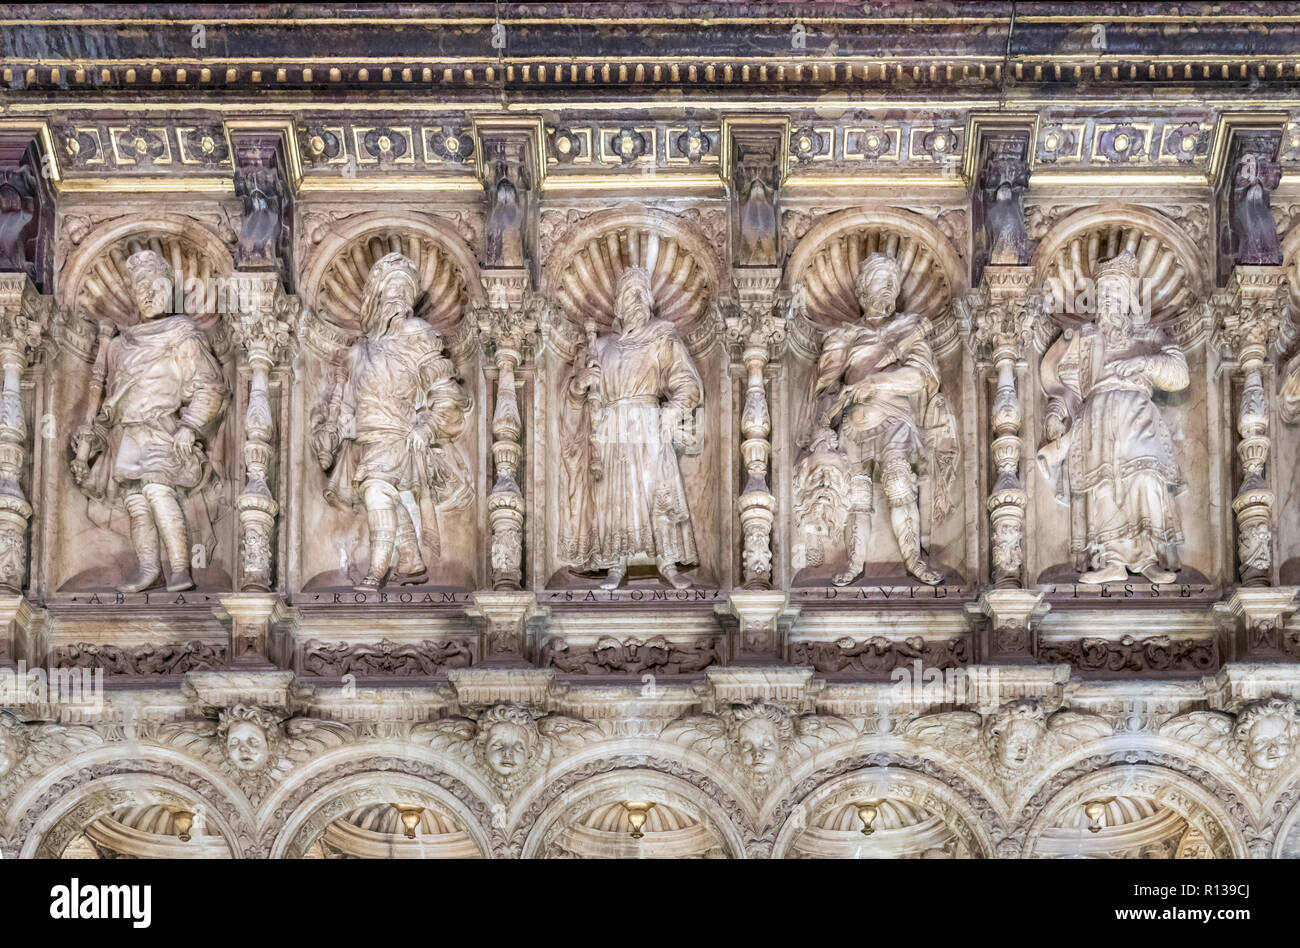 Sculptures dans le choeur (CORO) de la cathédrale de Tolède ( primat de la cathédrale Sainte Marie de Tolède), Tolède, Castille la Manche, Espagne Banque D'Images